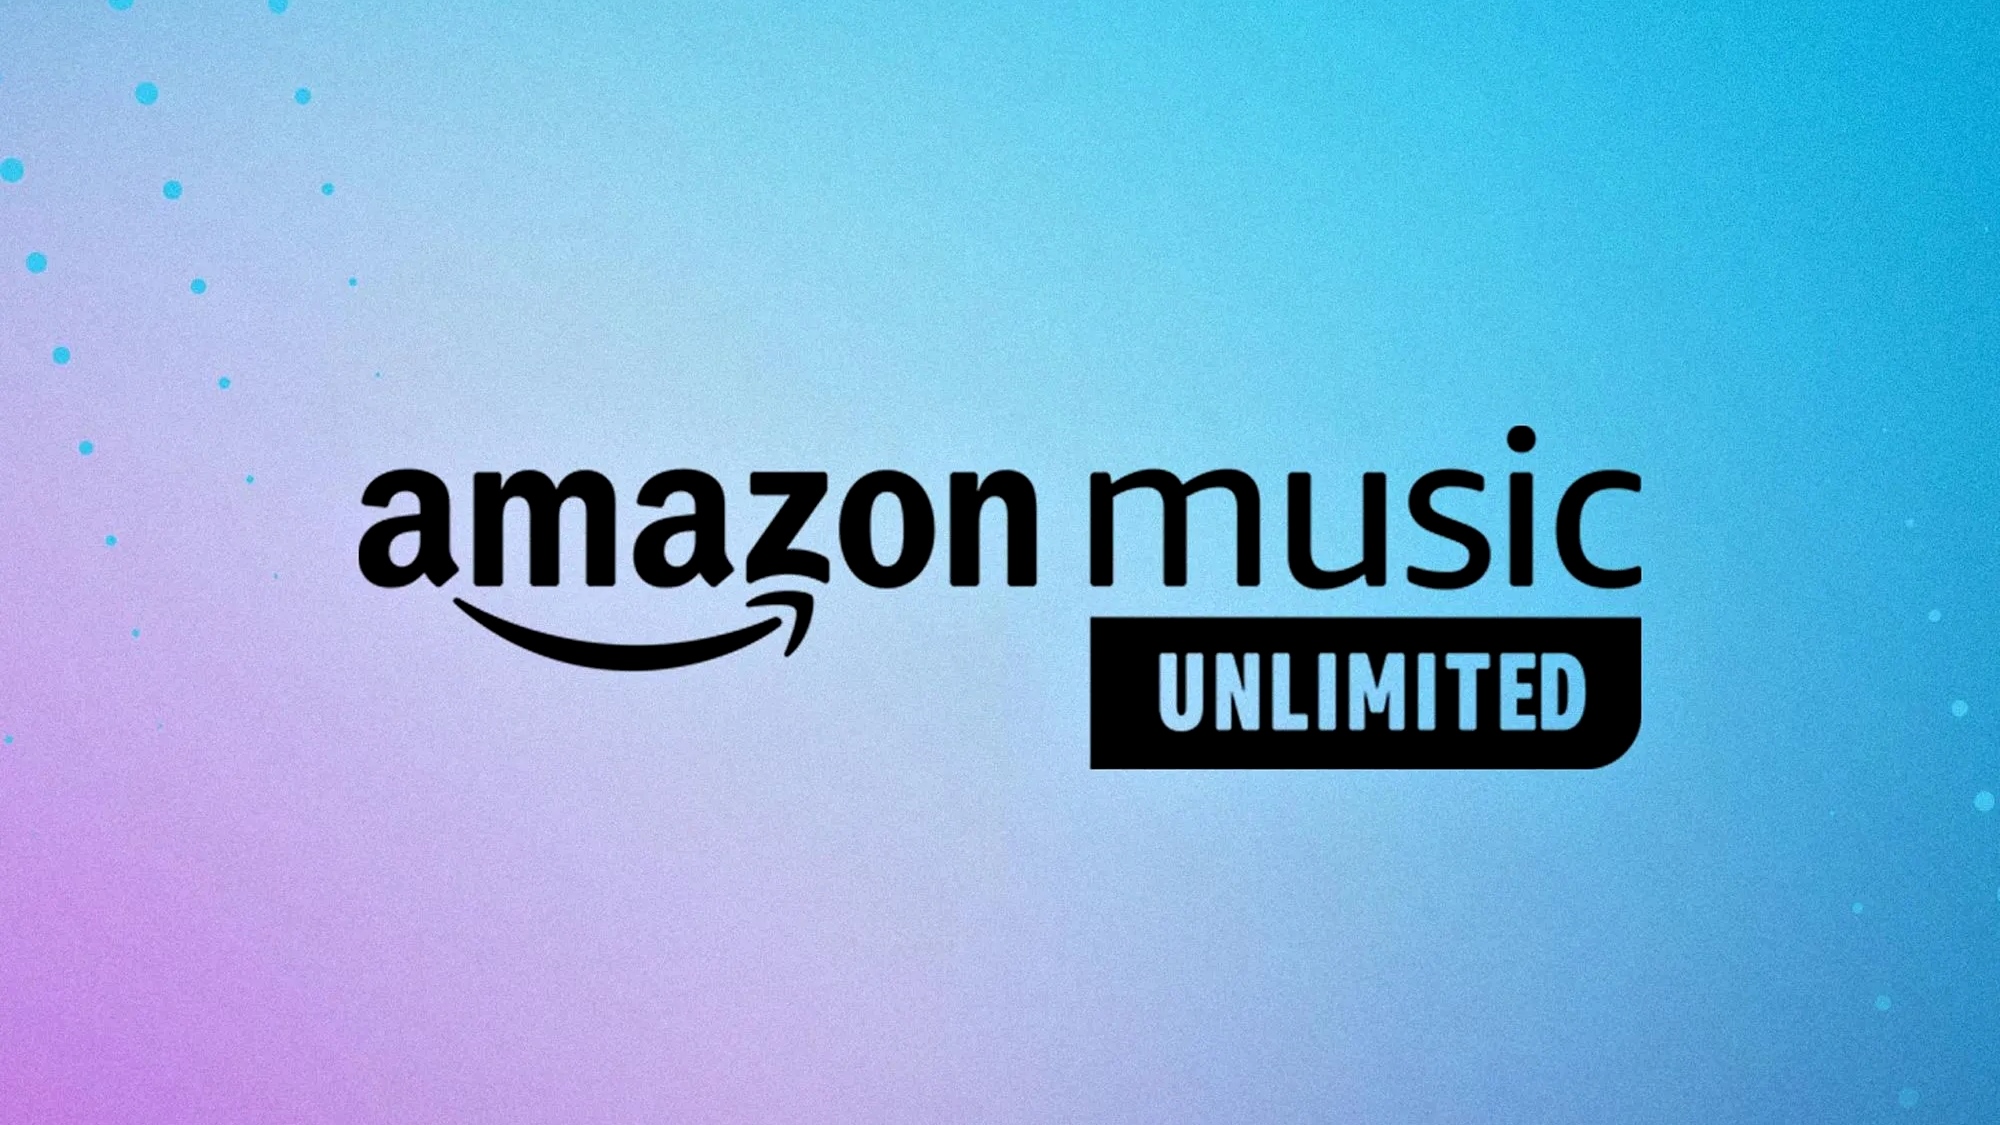 Sau Apple Music, tới phiên Amazon Music Unlimited sắp sửa tăng giá cho gói gia đình